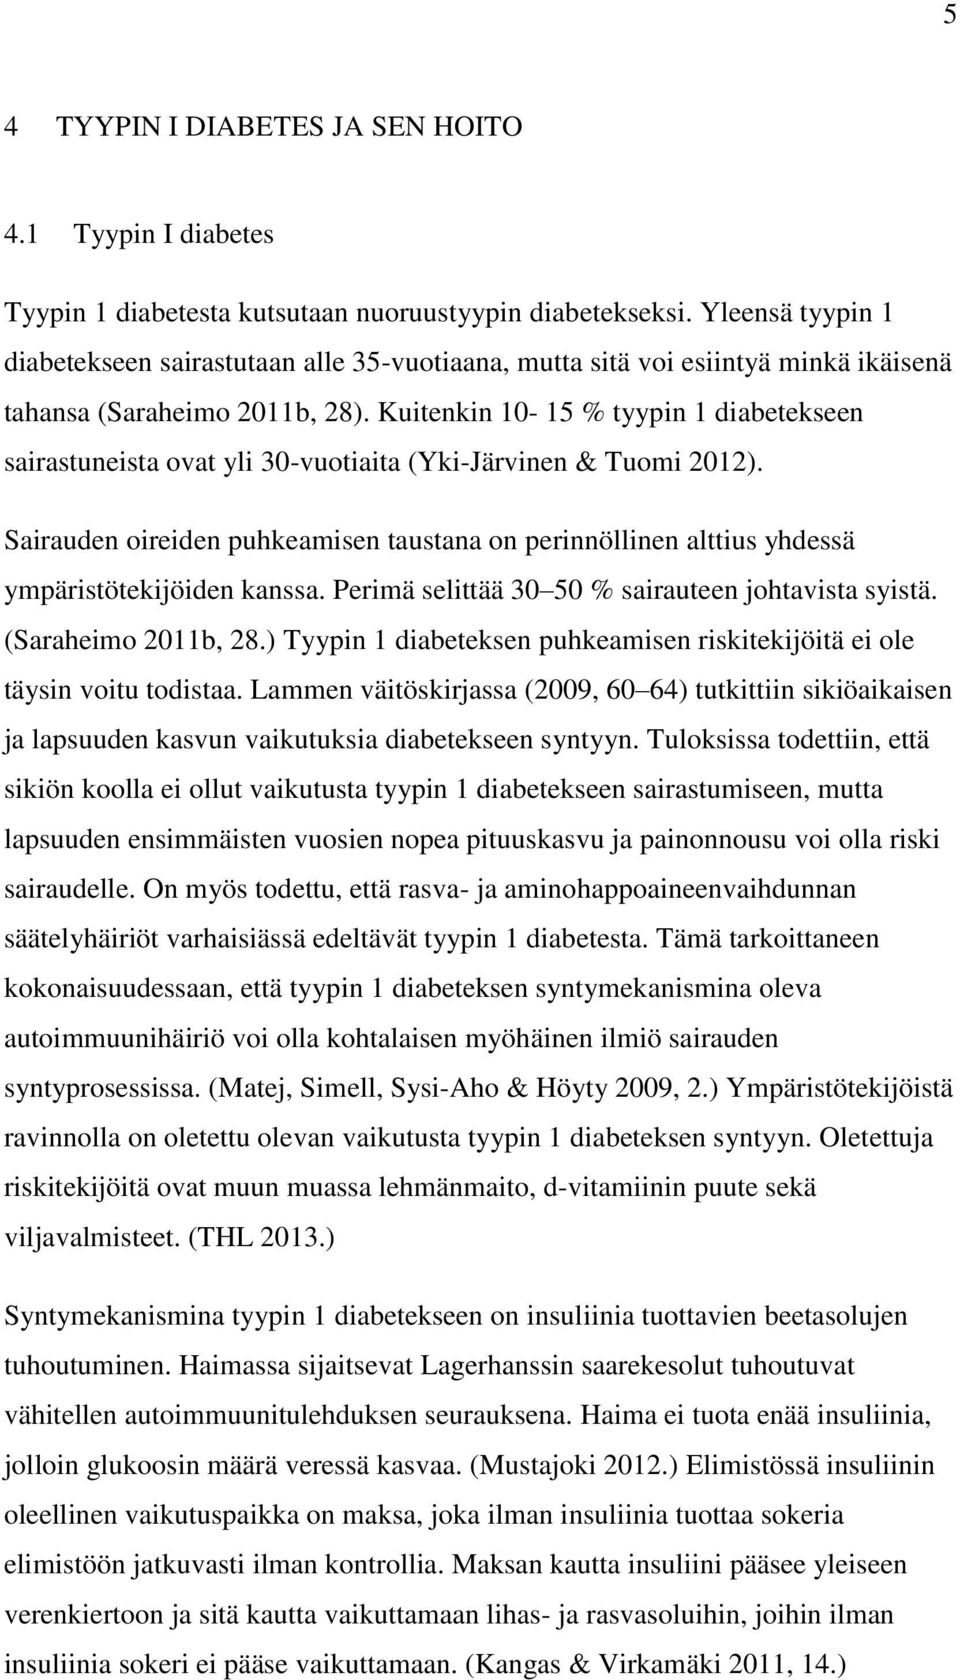 Kuitenkin 10-15 % tyypin 1 diabetekseen sairastuneista ovat yli 30-vuotiaita (Yki-Järvinen & Tuomi 2012).